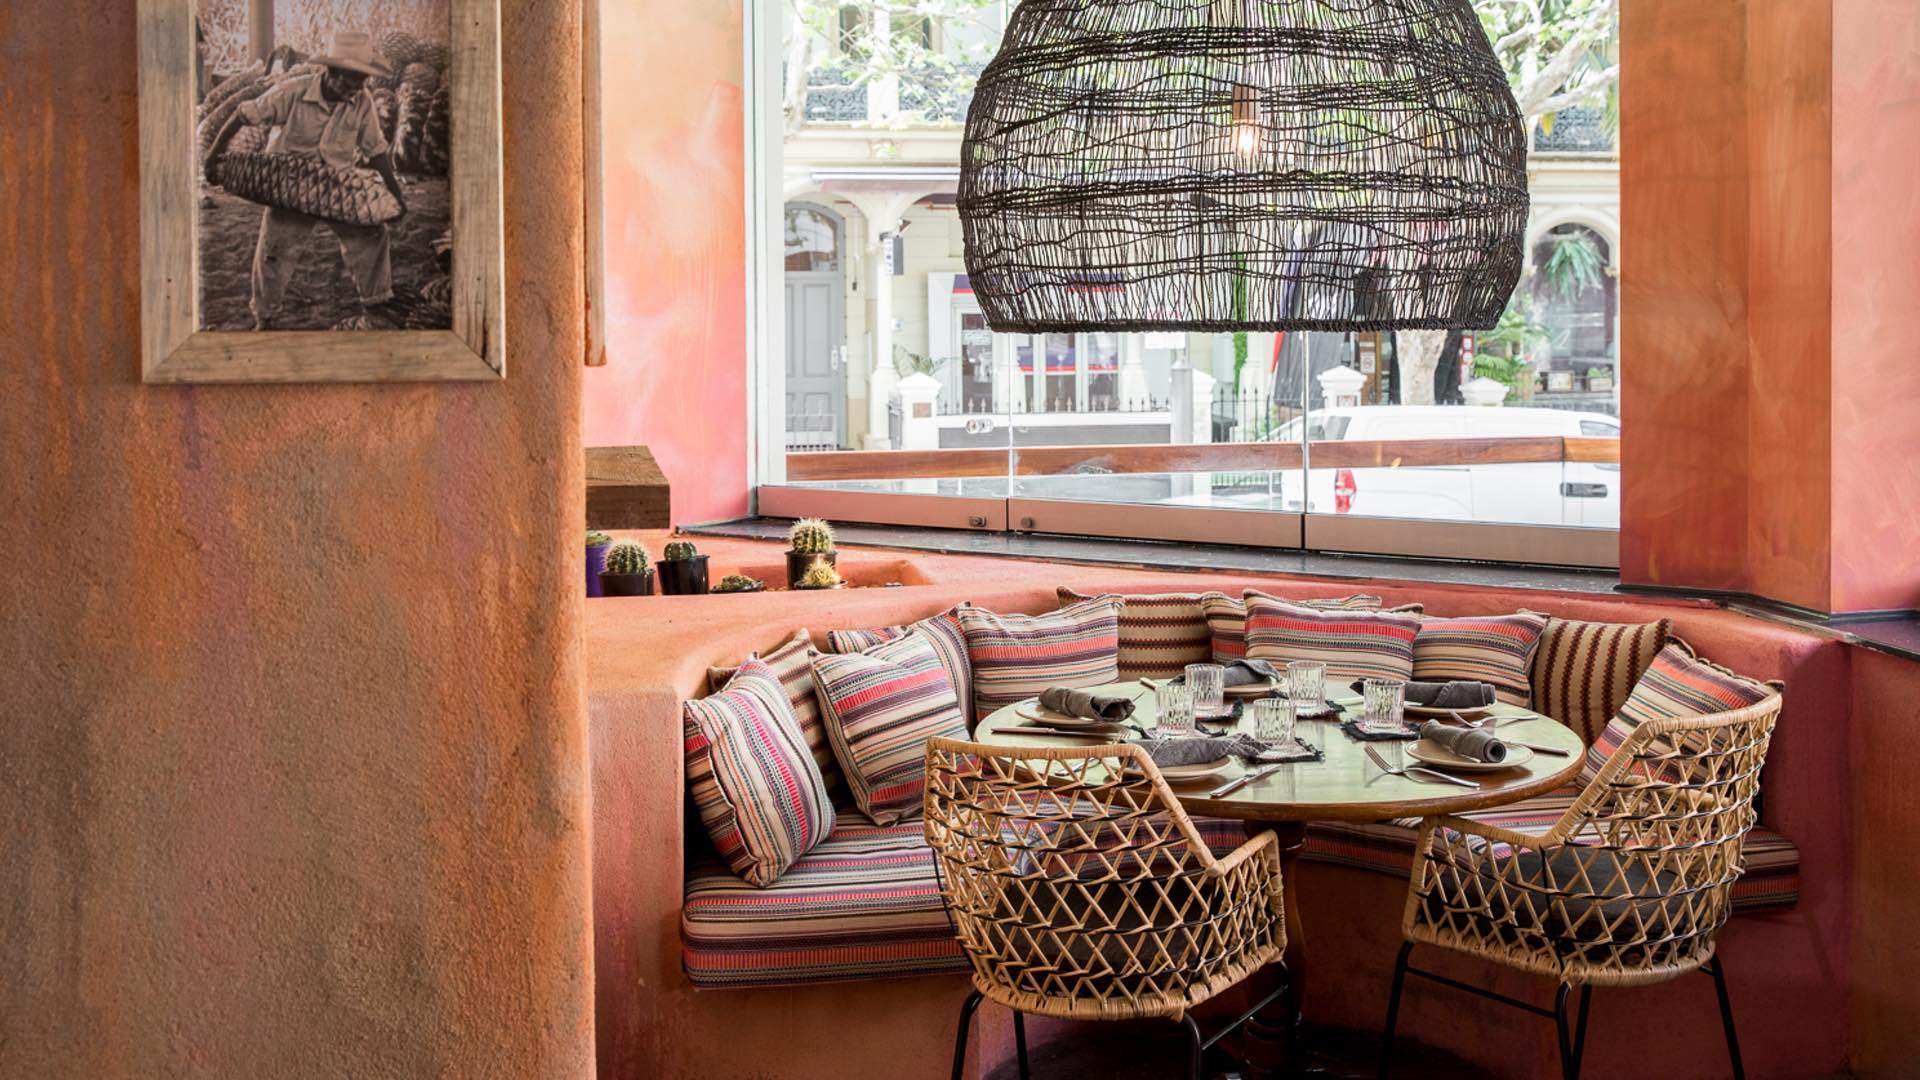 A Look Inside the Barrio Cellar Team's New Kings Cross Mexican Restaurant, Chula